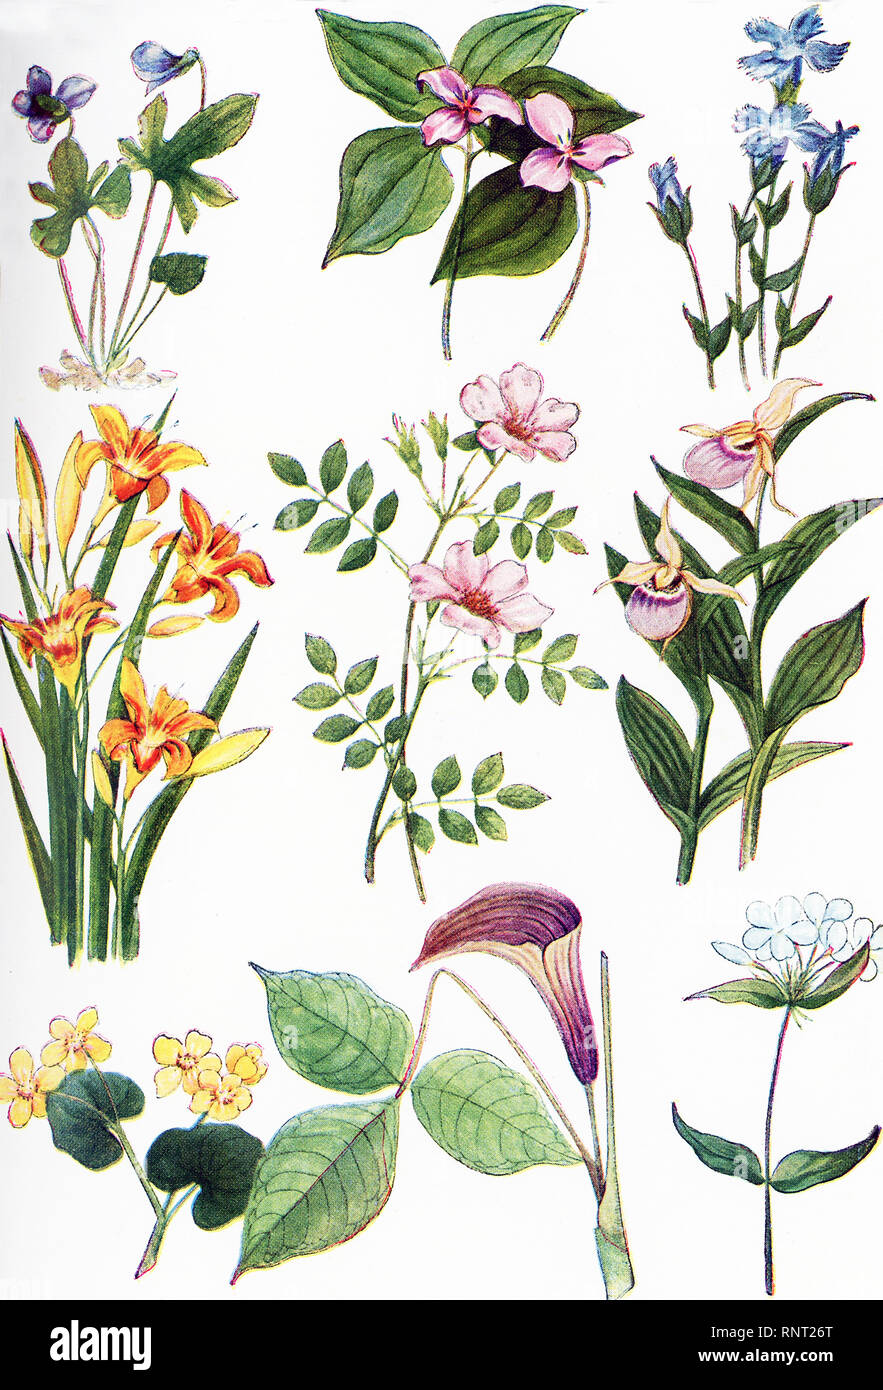 Die Abbildung hier angegebenen Termine bis 1922. Die hier abgebildeten sind North American Wildflowers: von links nach rechts und von oben nach unten: 1. Violett, 2. Wake Robin, 3 Gefranste Enzian, 4. Tag Lily, 5. Smooth Rose, 6. Frauenschuh, 7. Sumpfdotterblume, 8. Jack auf der Kanzel, 9. Phlox. Stockfoto